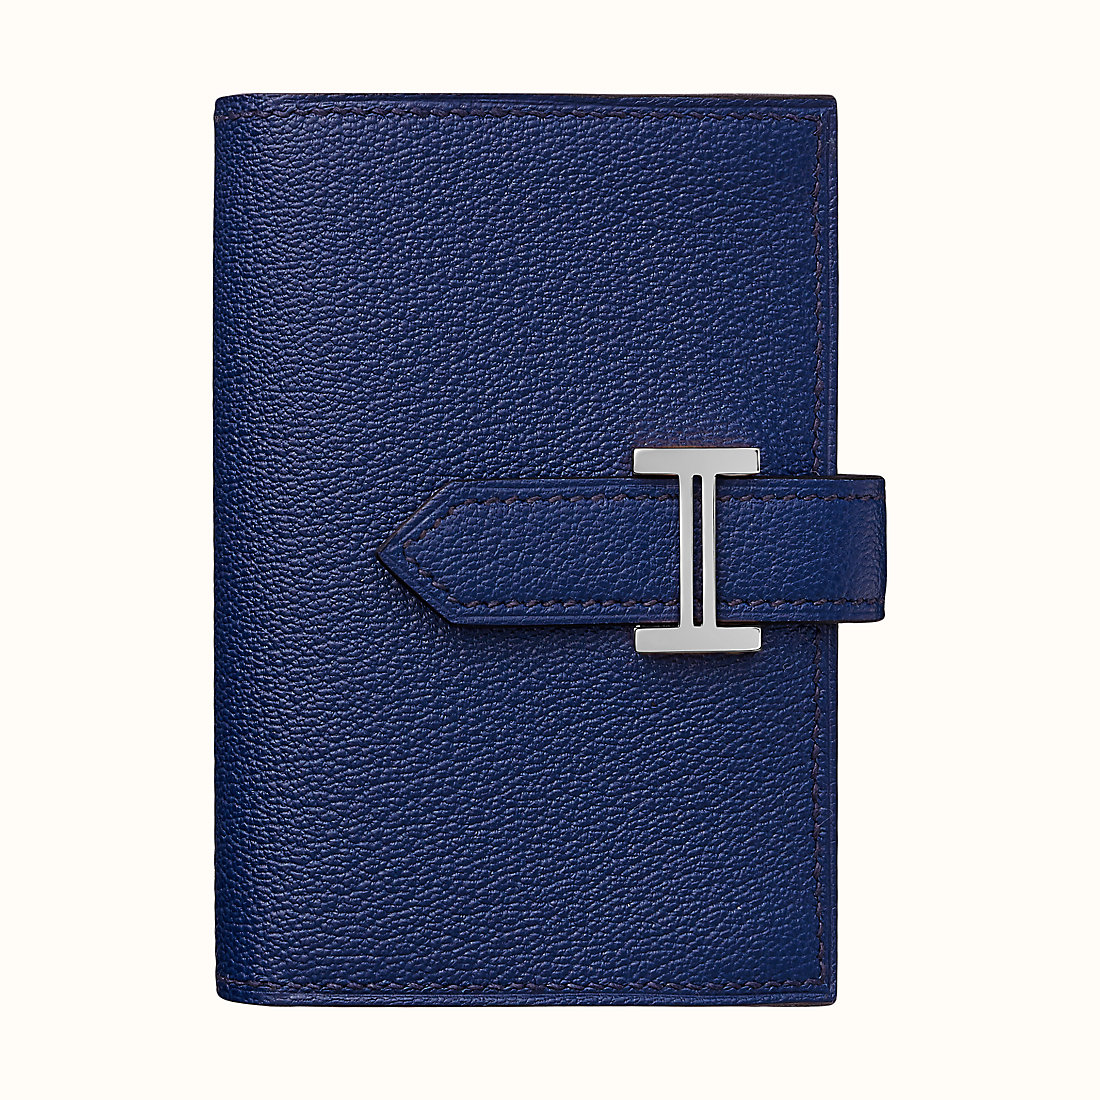 臺灣臺北市愛馬仕短錢包 Hermes Bearn mini wallet CK73 Bleu Saphir 寶石藍